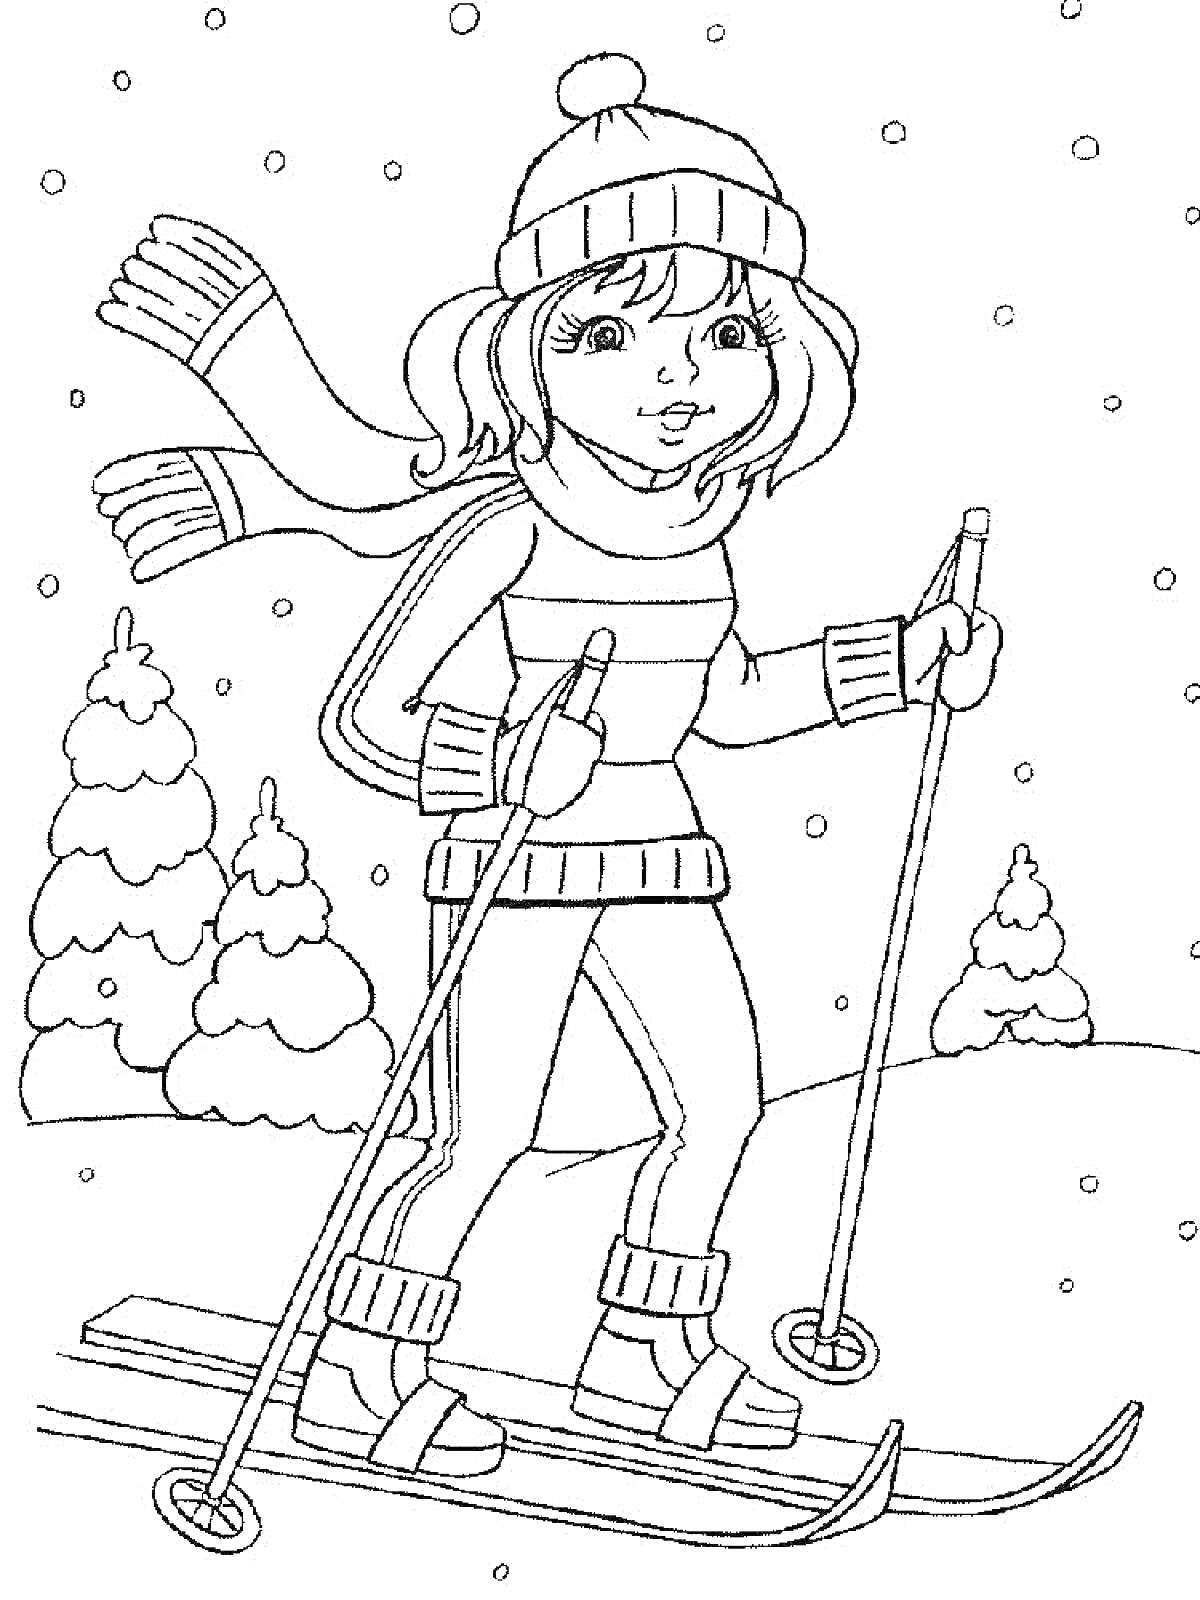 Раскраска Девочка на лыжах в зимнем лесу с падающим снегом и елками